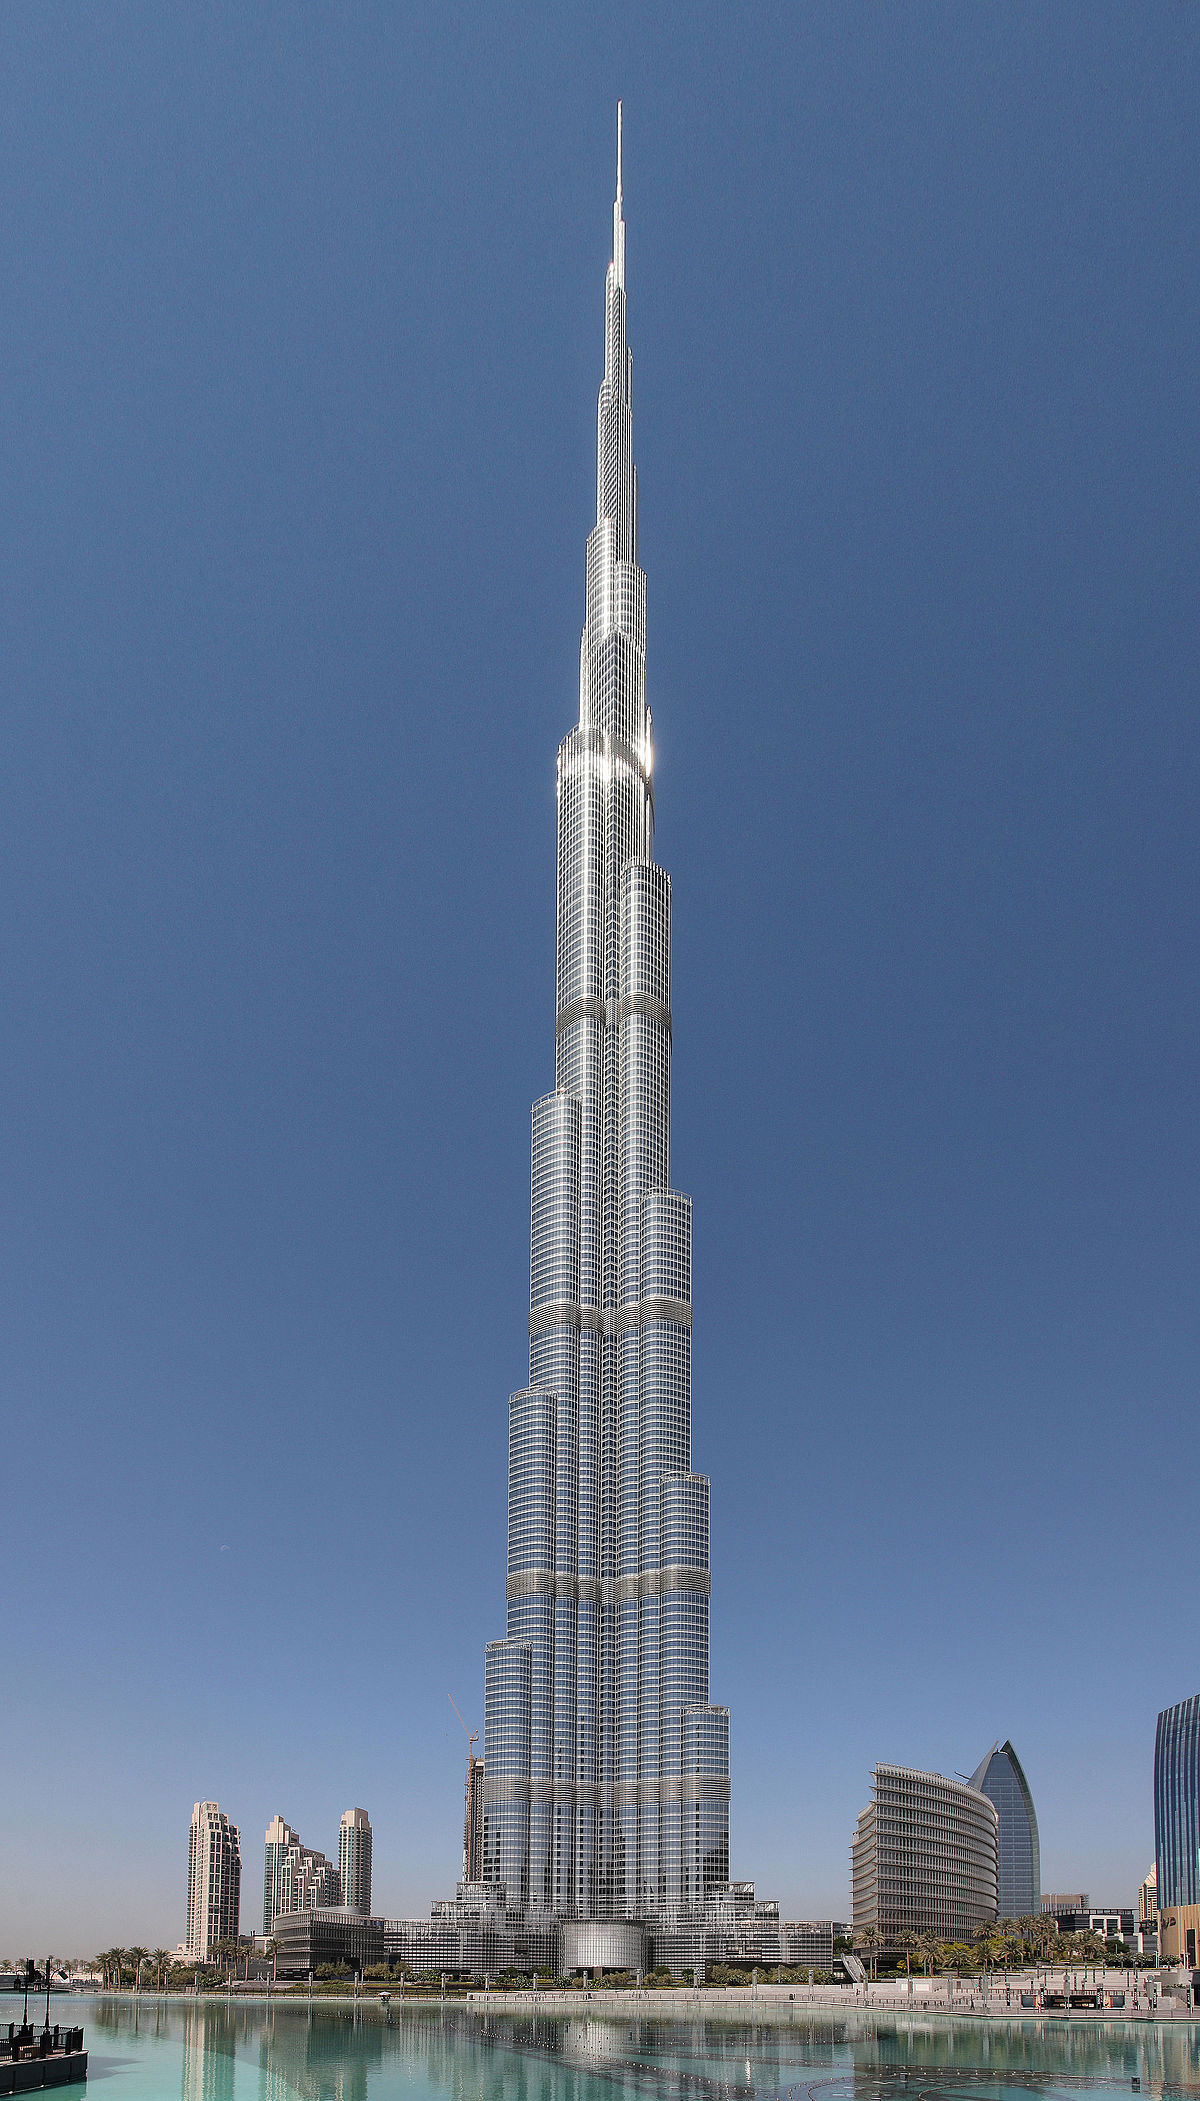 Burj Khalifa - biểu tượng của Dubai - thể hiện sự giàu có và quyền lực của thành phố này. Hãy xem hình ảnh này để cảm nhận sự lộng lẫy và đẳng cấp của tòa nhà cao nhất thế giới.